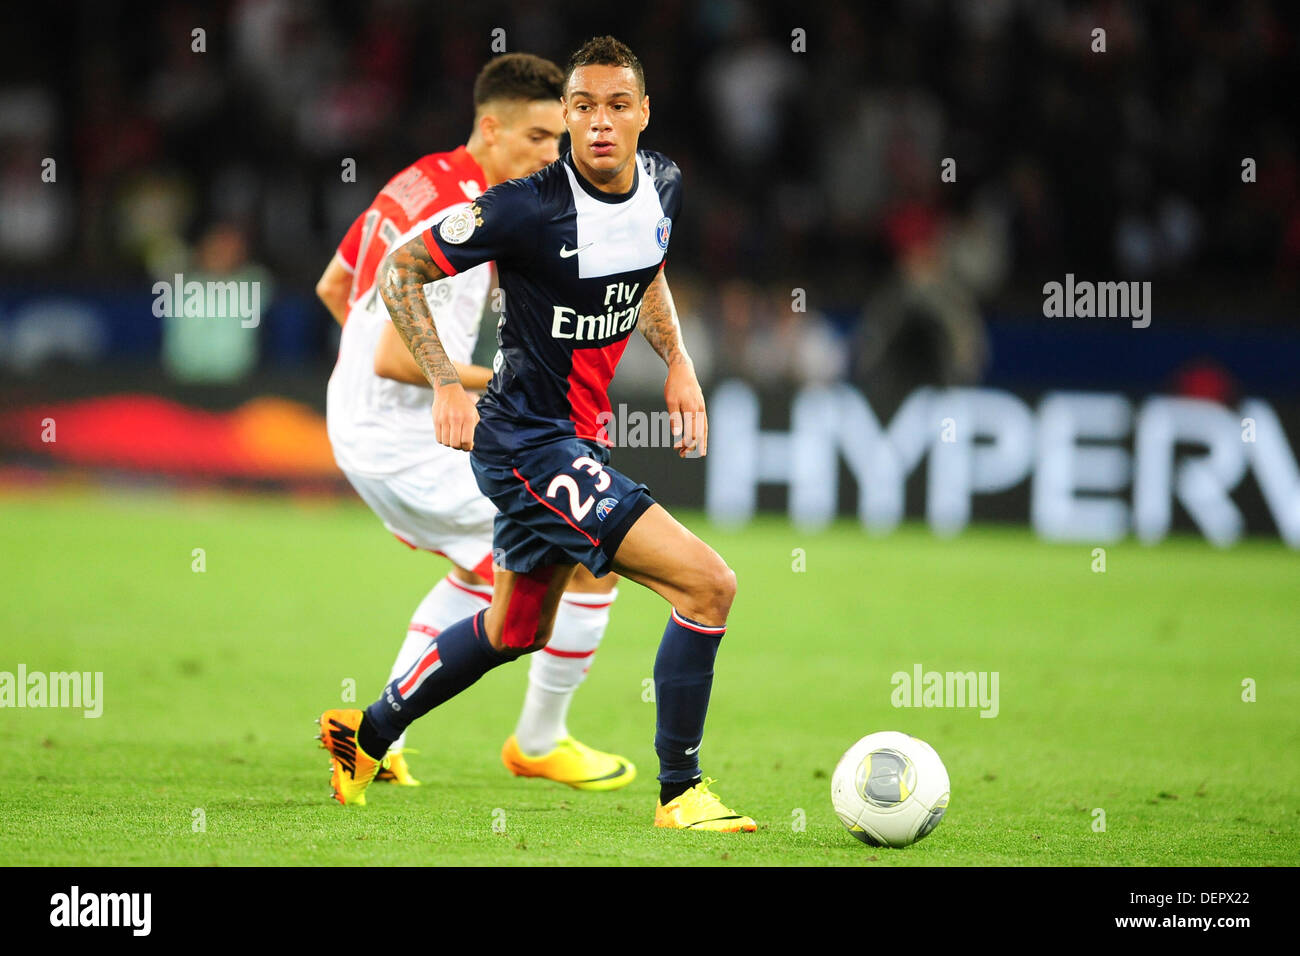 Goal Grégory VAN DER WIEL (73') - Toulouse FC - Paris Saint-Germain (0-4) /  2012-13 